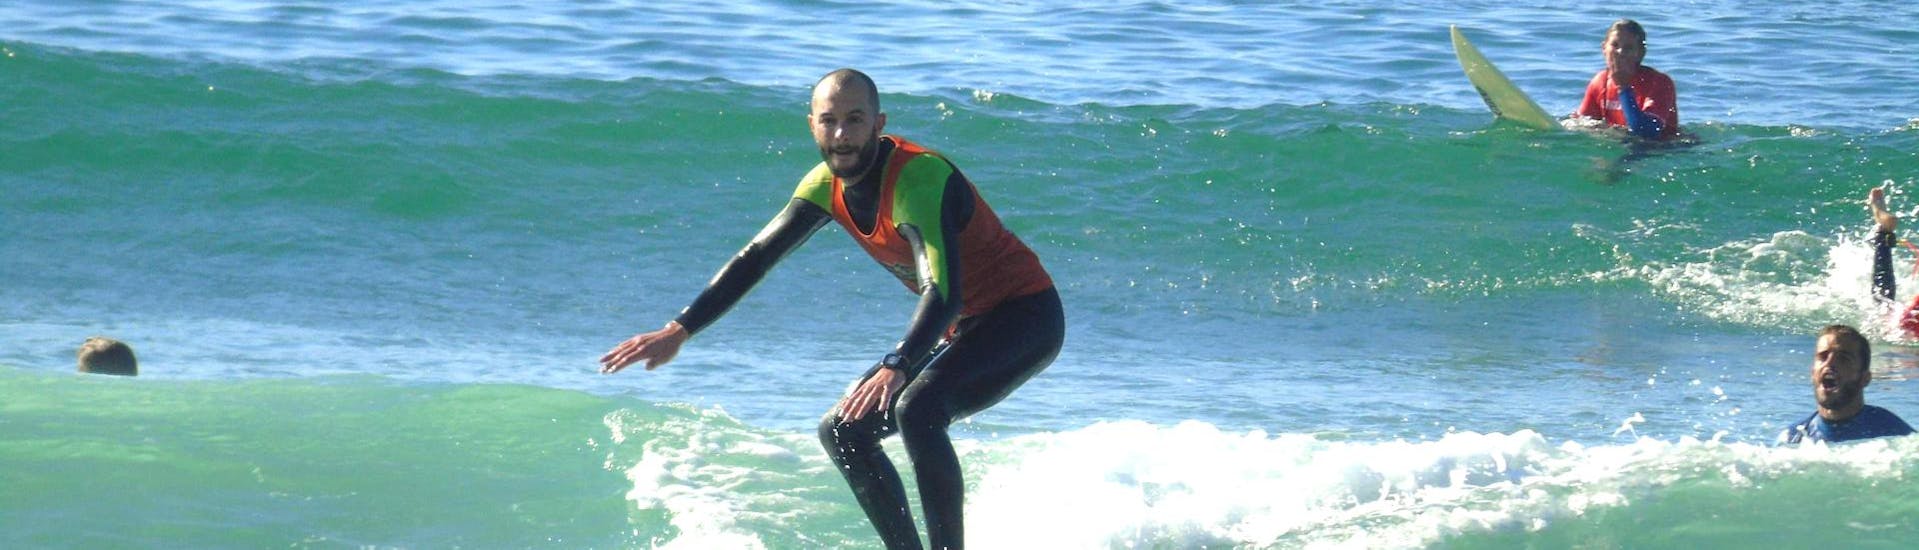 Lezioni private di surf a Matosinhos da 7 anni per tutti i livelli.